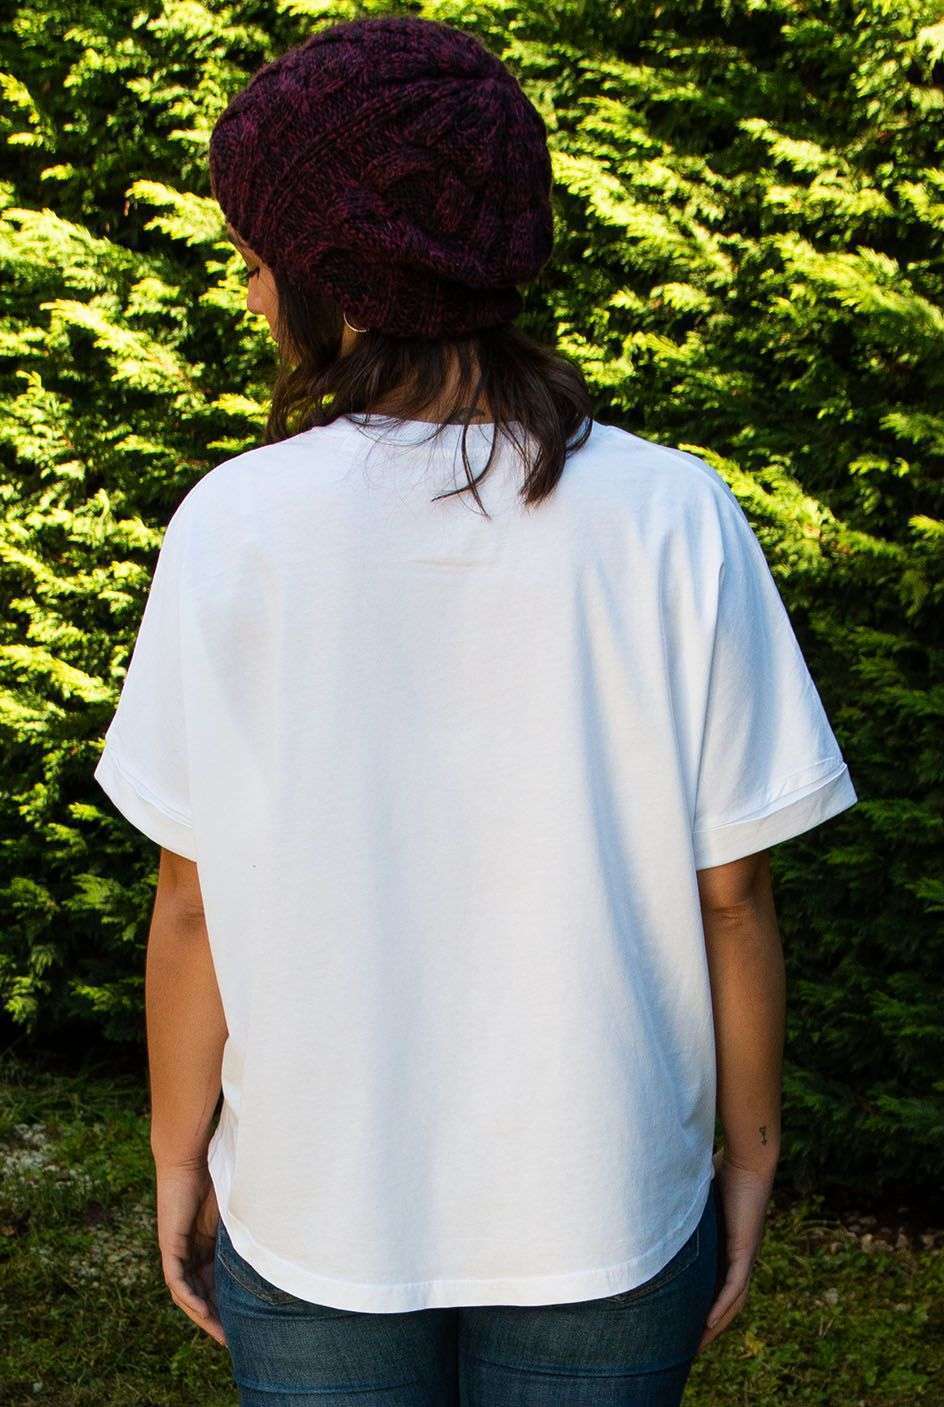 Camiseta-mujer aire-alejandra-sirem wild-algodon organico